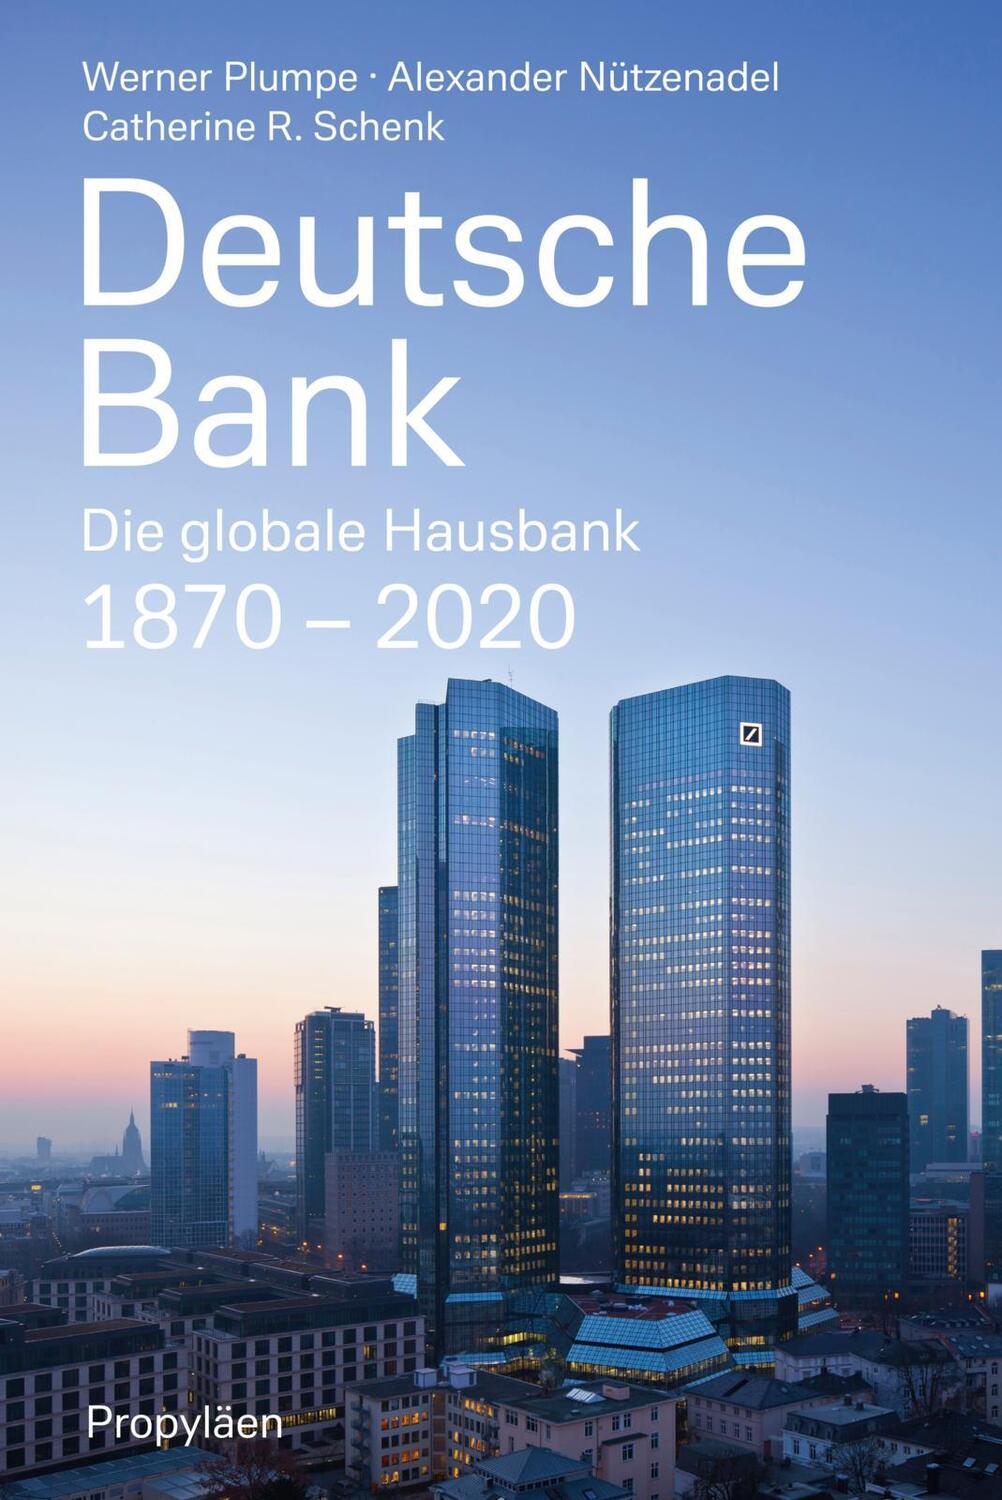 Deutsche Bank - Plumpe, Werner